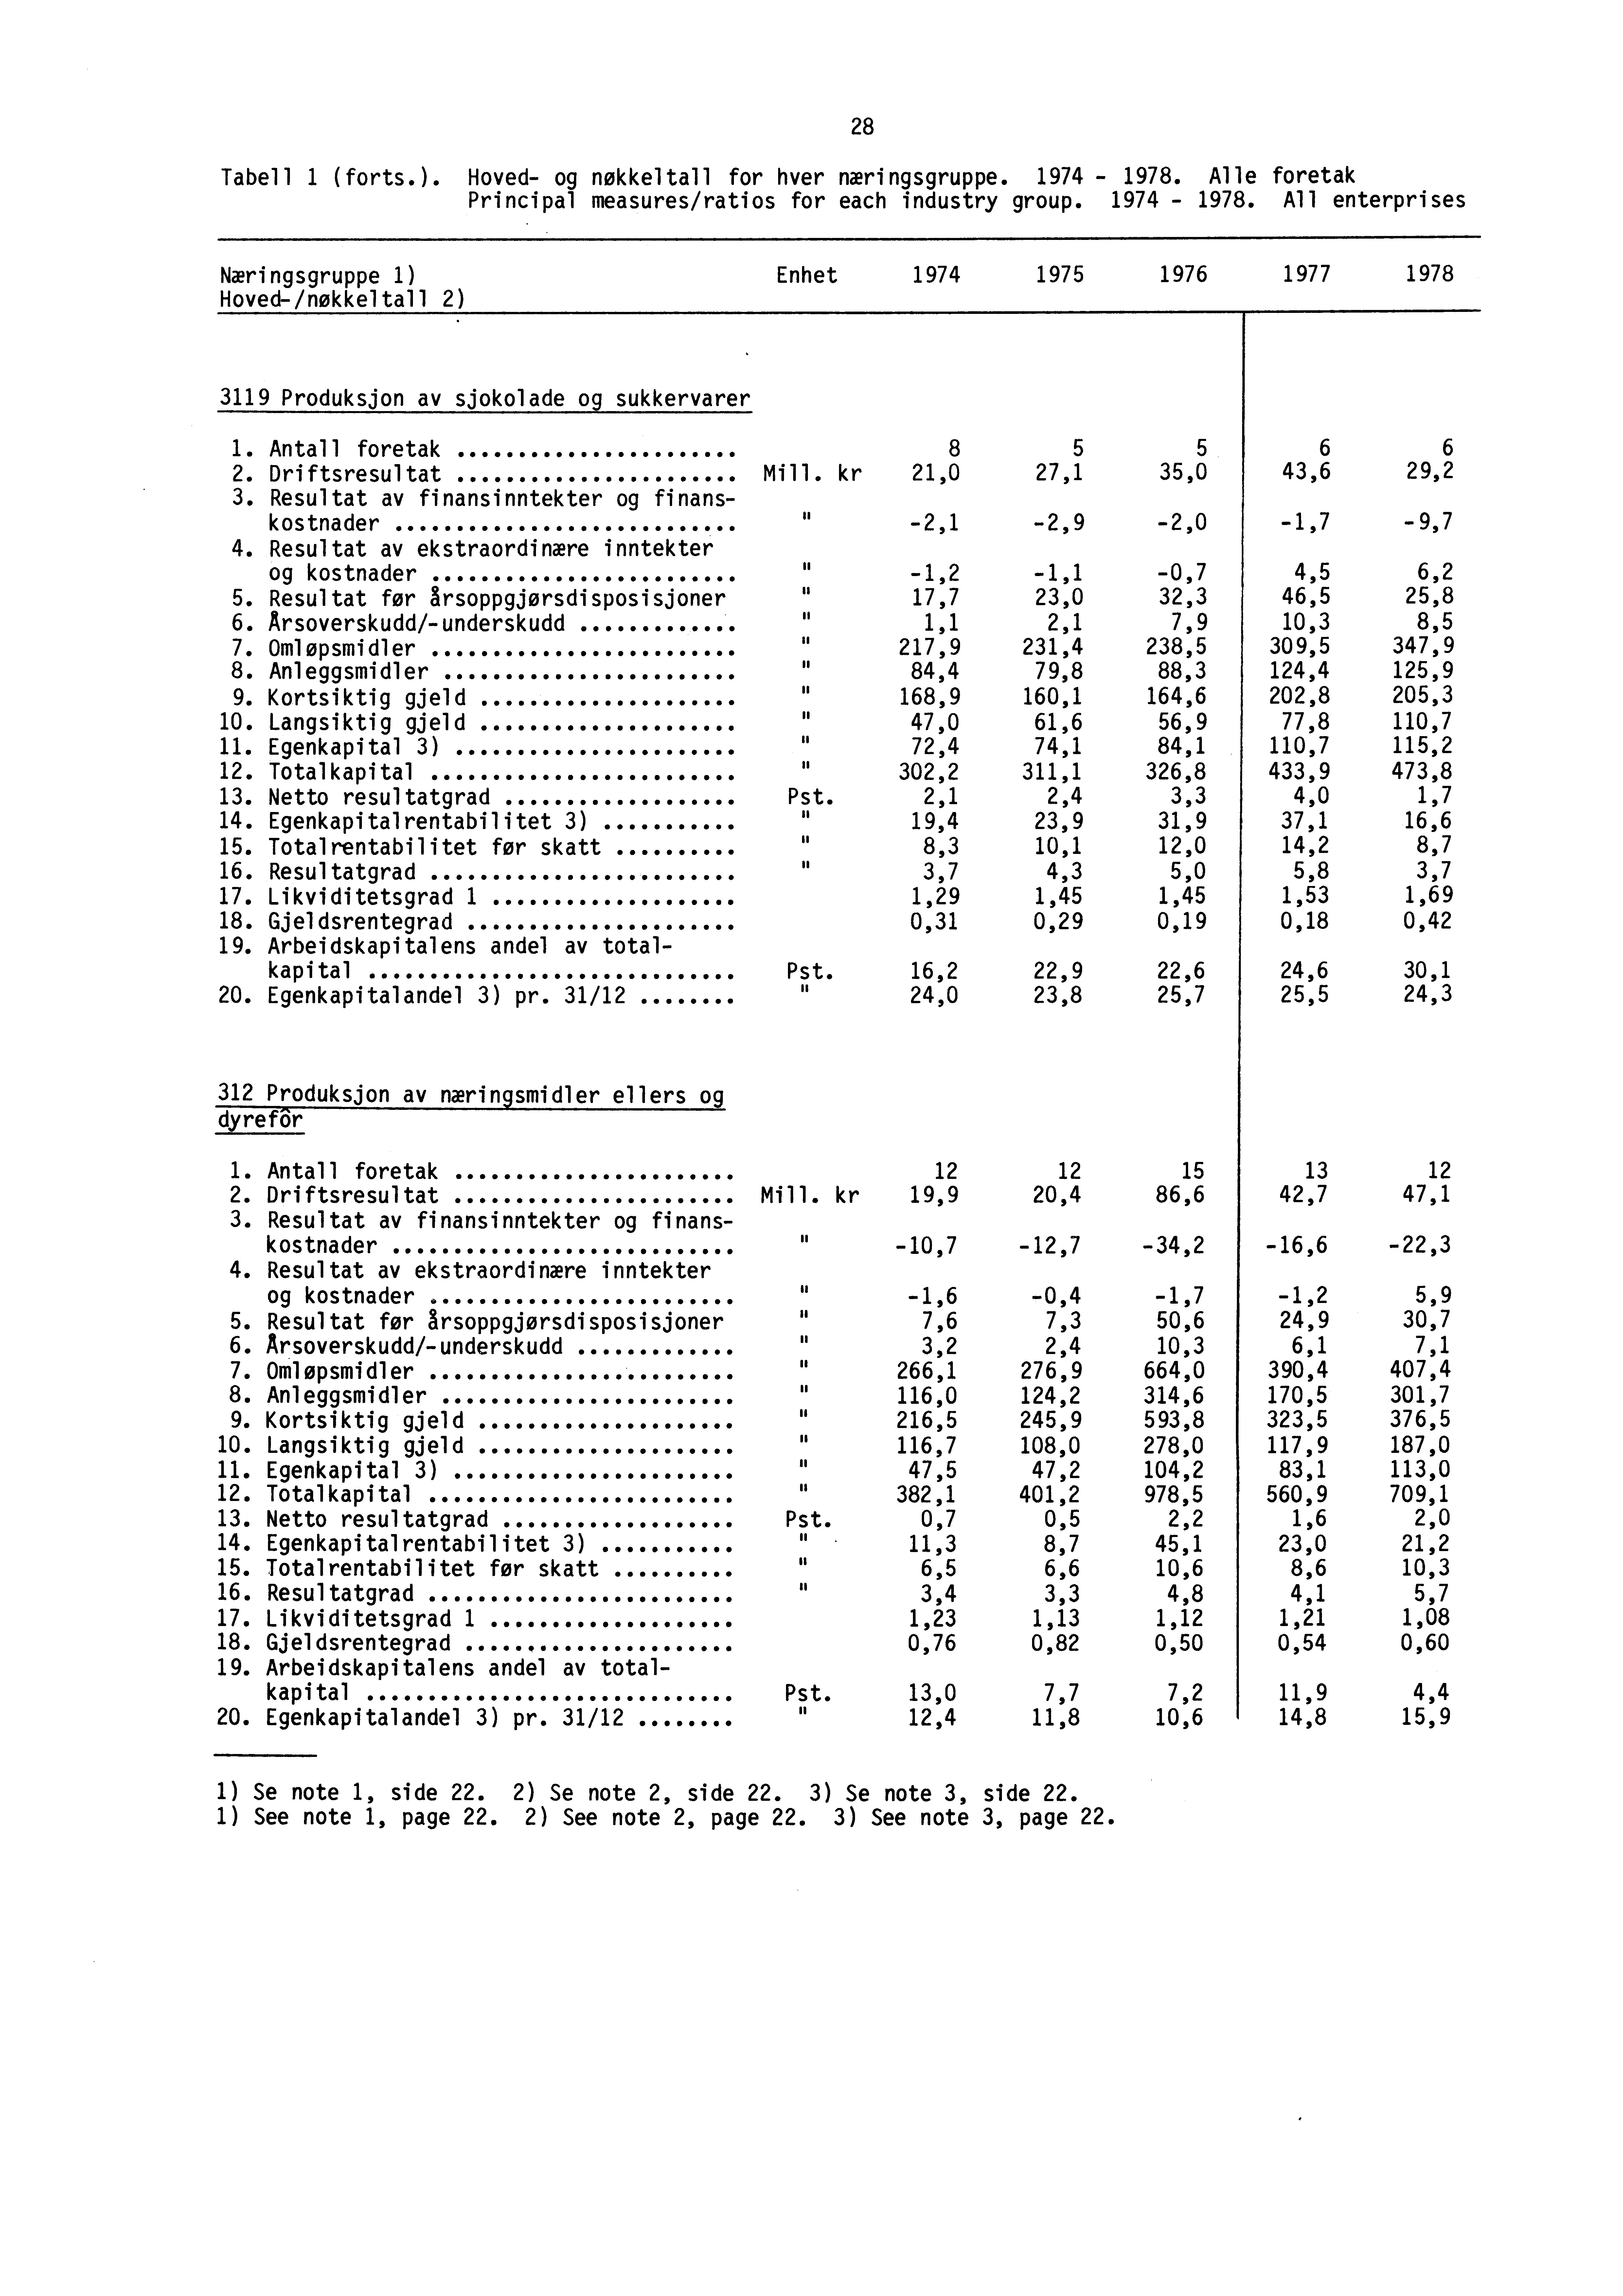 Tabell 1 (forts.). Hoved- og nøkkeltall for hver næringsgruppe. 1974-1978.